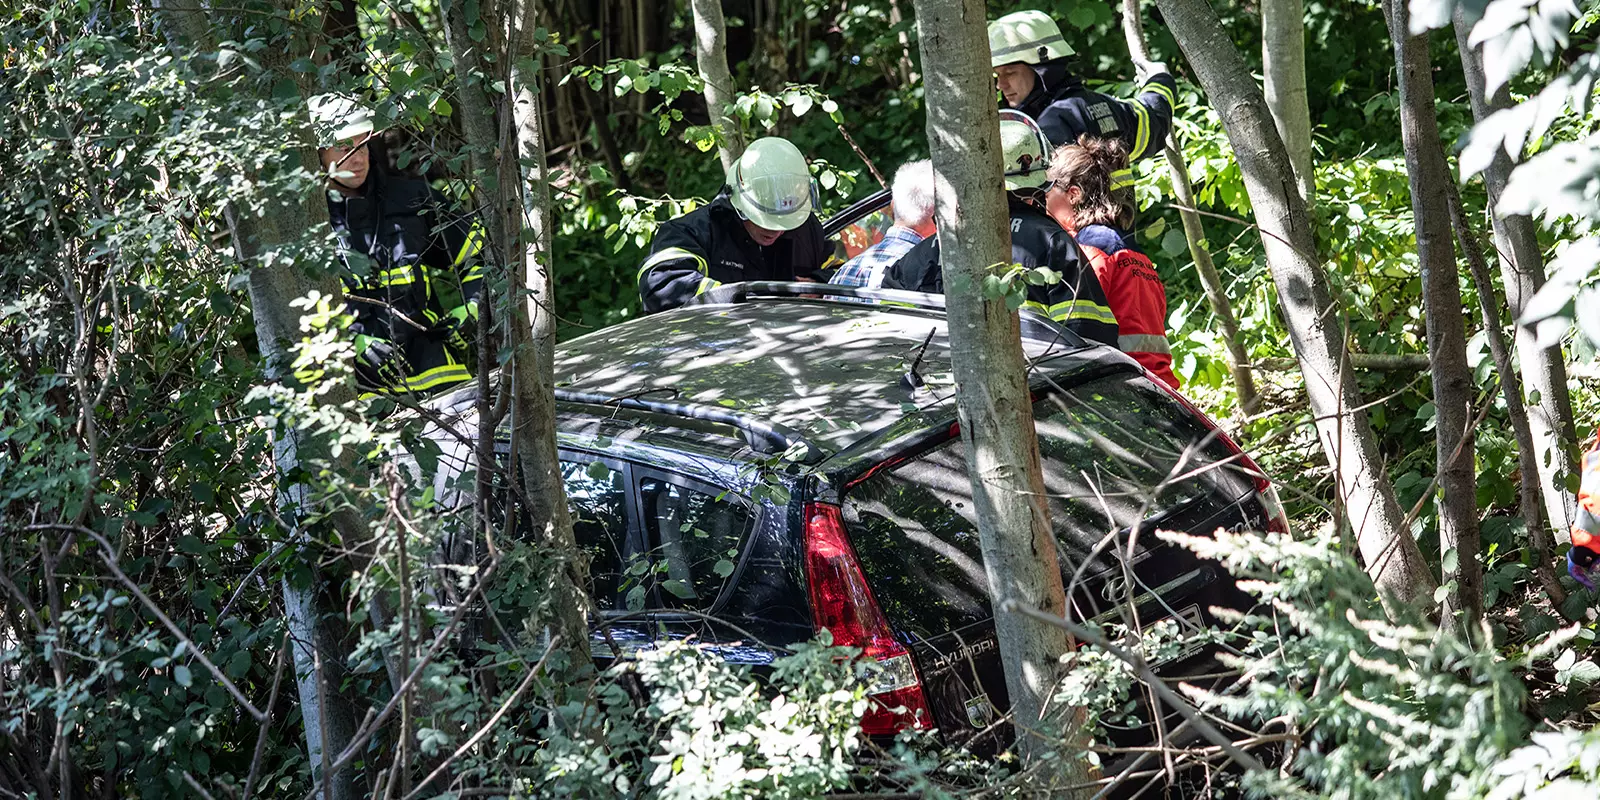 Feuerwehrleute holen den Fahrer aus dem zwischen Bäumen stehenden Auto. Foto: zv